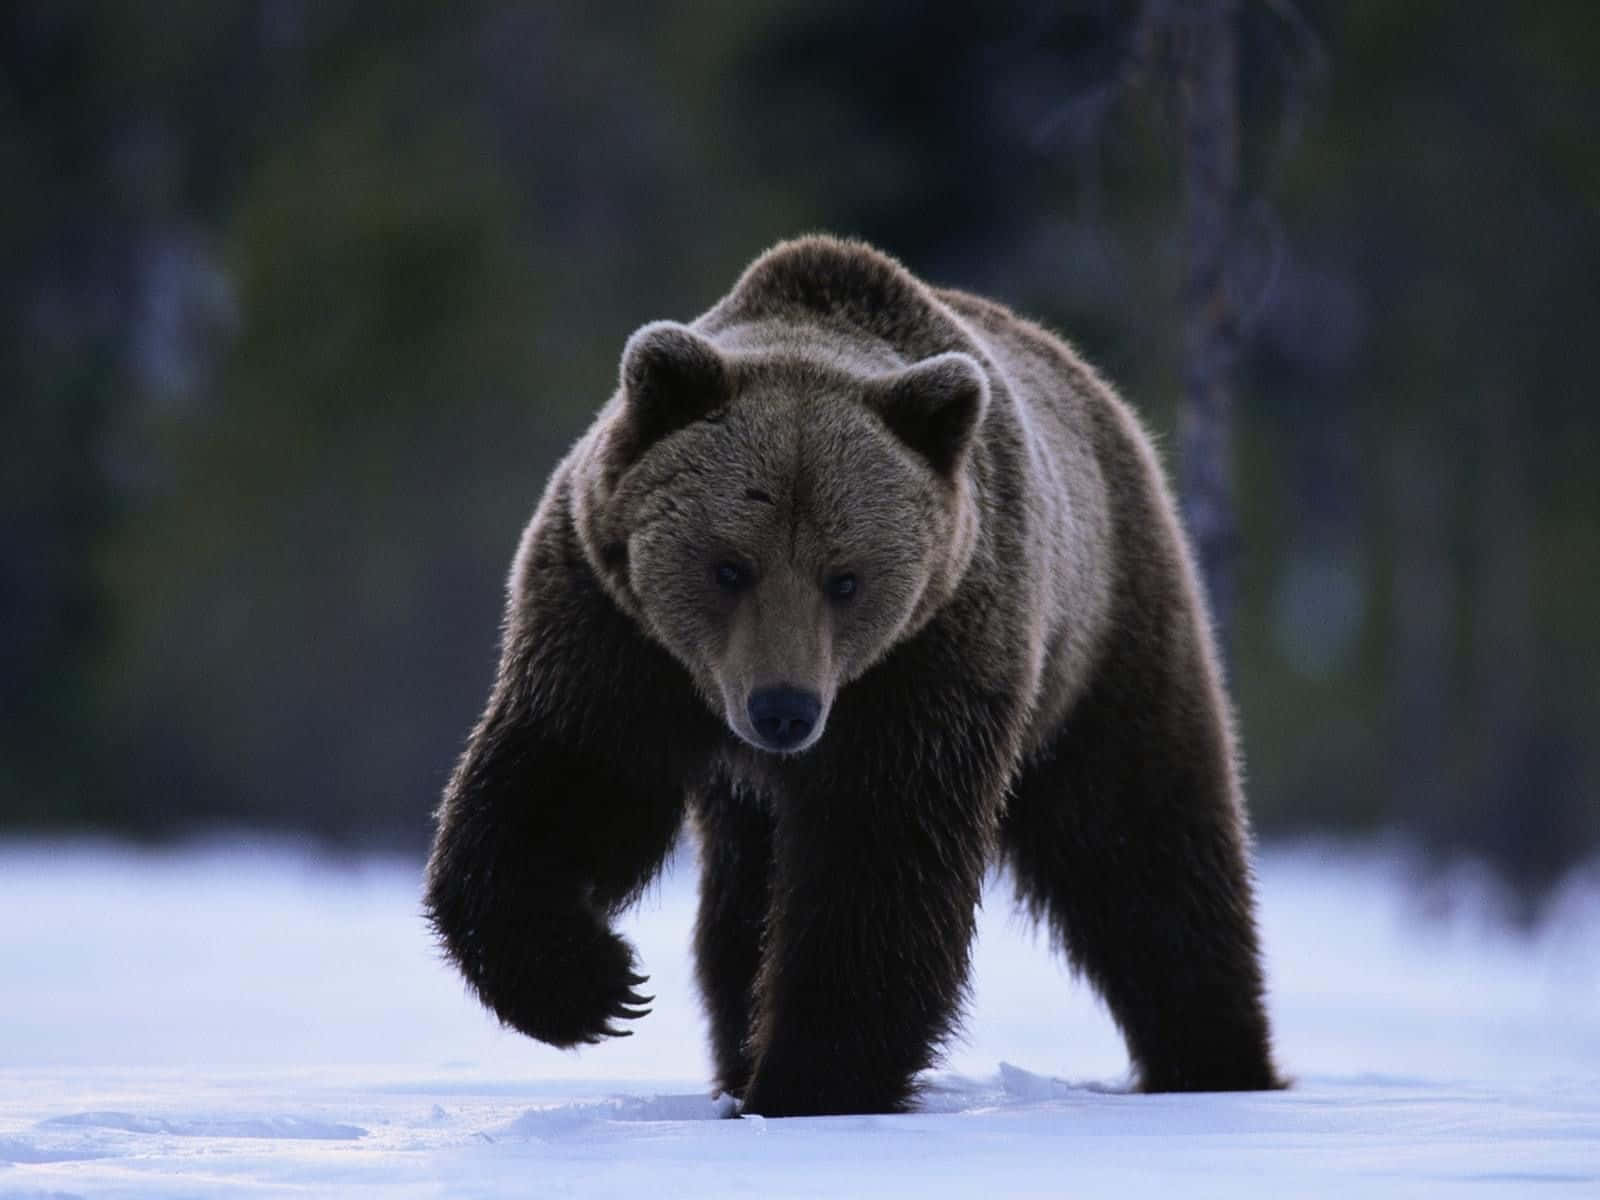 Umferoz Urso Pardo Investe Contra Outro Animal Em Meio A Um Ataque Intenso De Ursos.